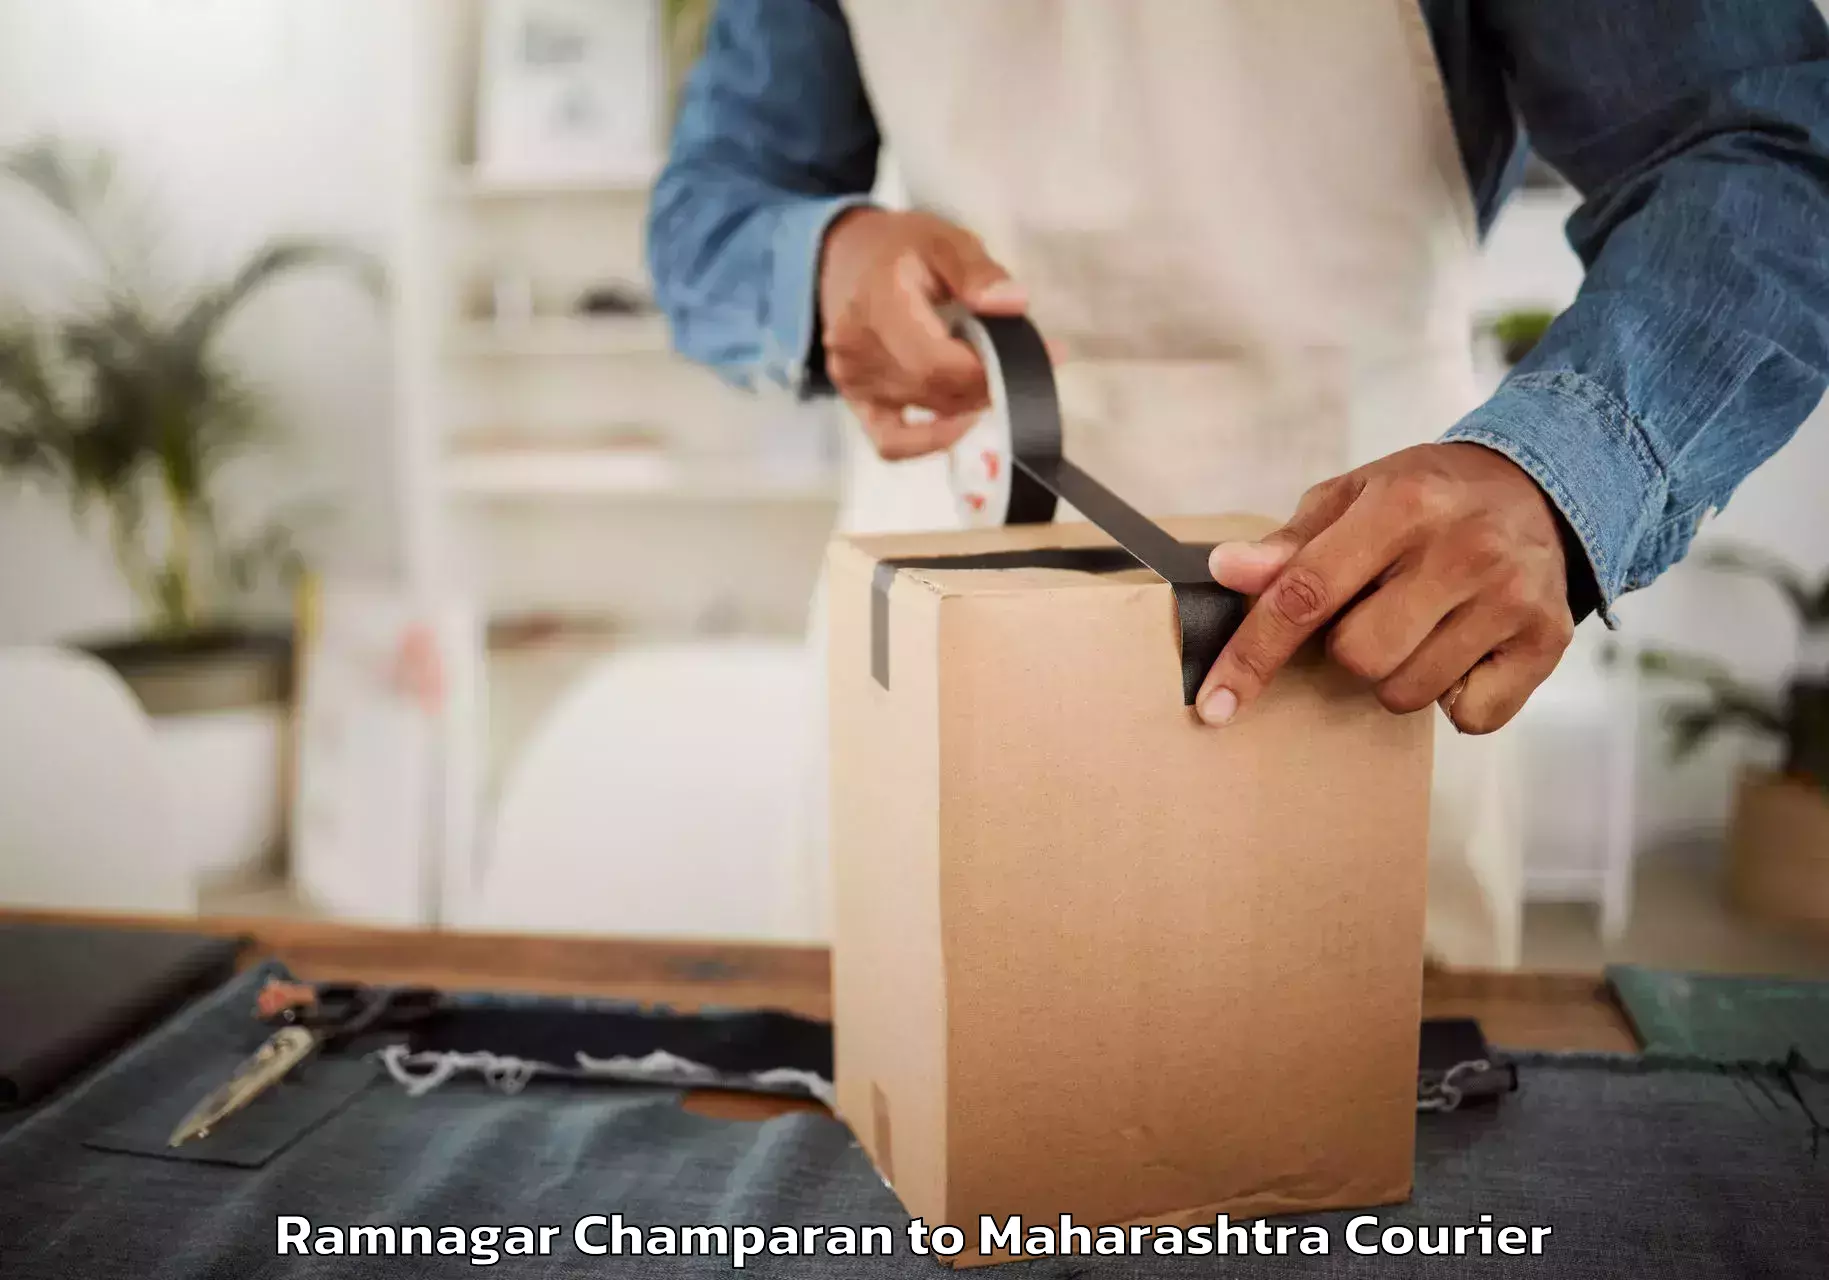 Furniture moving and handling Ramnagar Champaran to Chandrapur